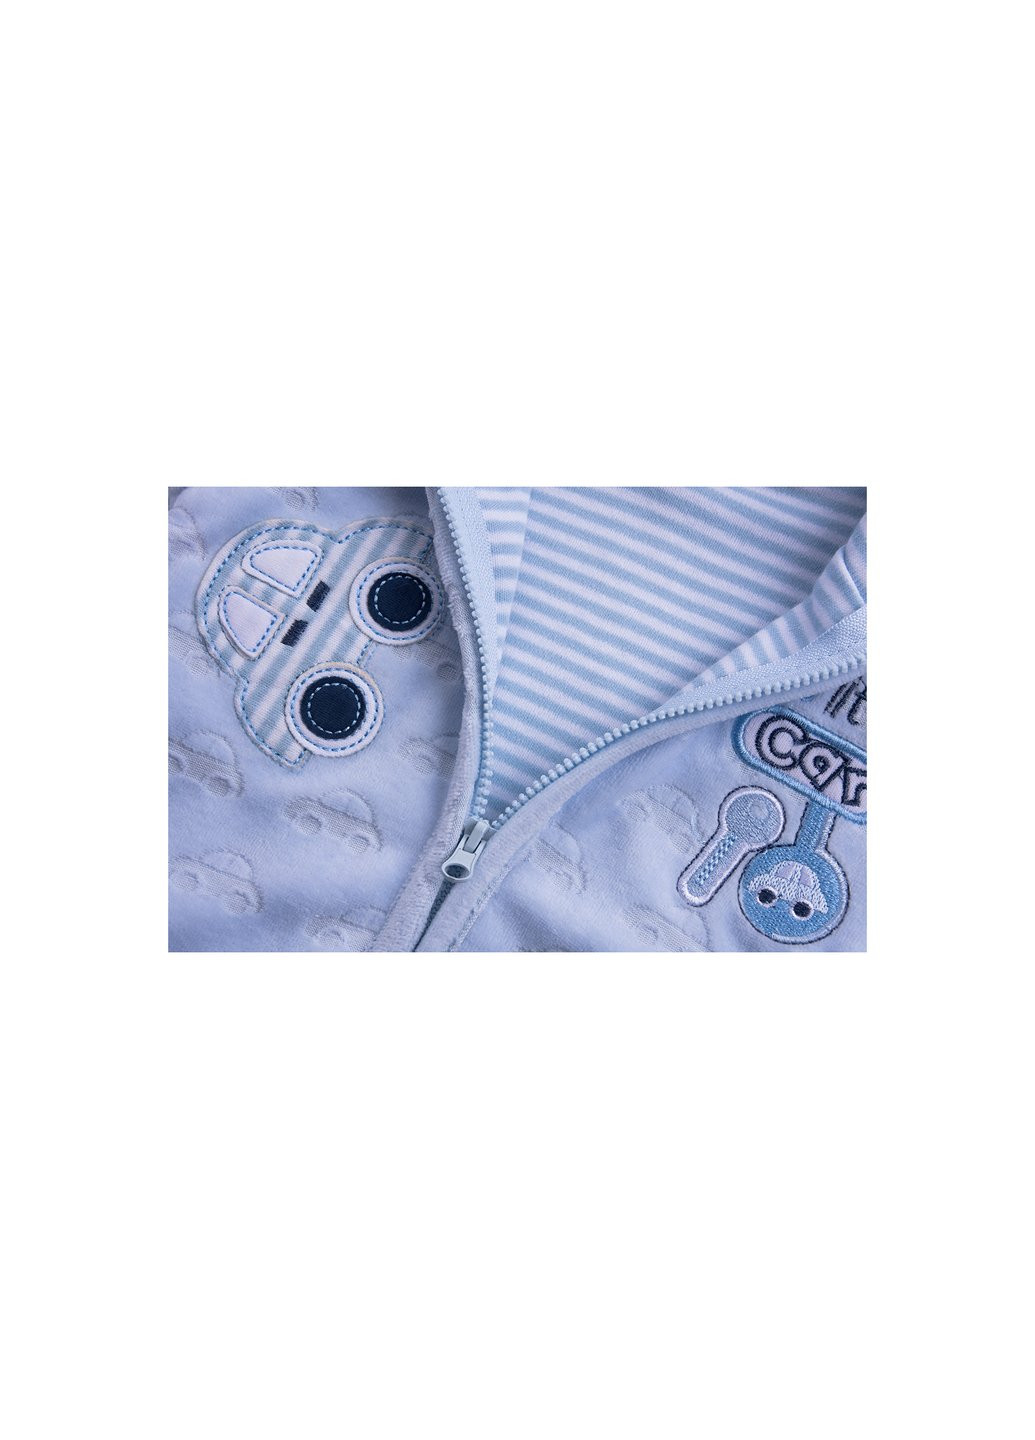 Комбинированный демисезонный набор детской одежды велюровый голубой c капюшоном (ep6206.nb) Luvena Fortuna